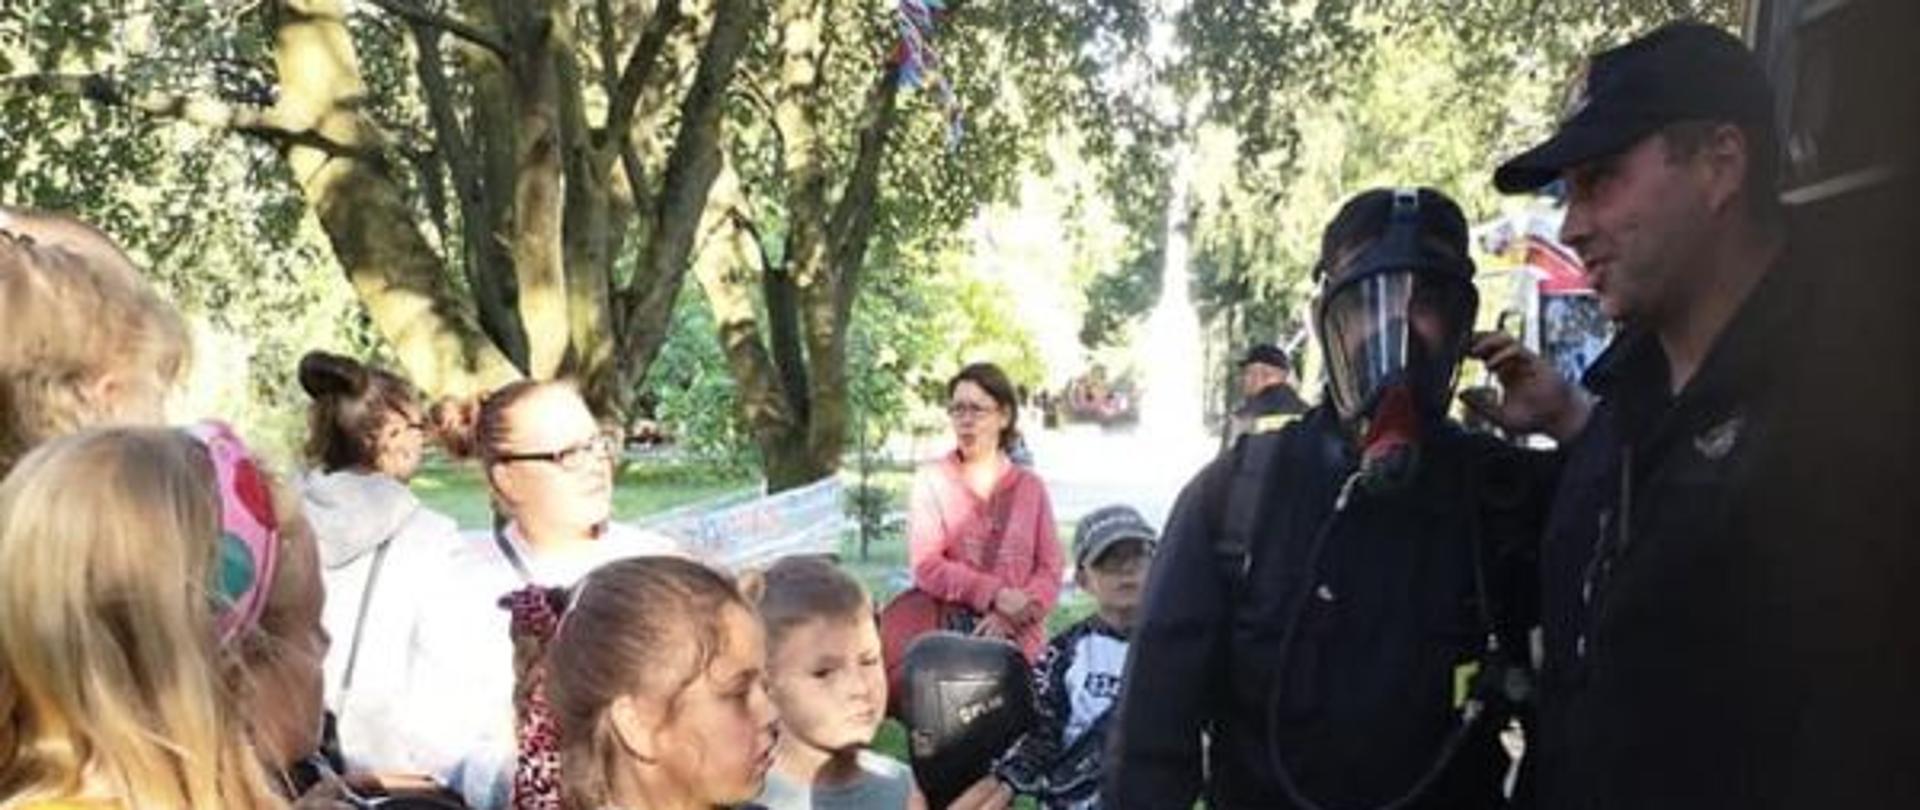 Zdjęcie grupowe. Strażacy stoją przy wozie z boku.Przed strażakami grupka dzieci.Zdjęcie wykonane w parku.Dzieci stoją i słuchają strażaków.Jeden z nich ma na sobie maskę aparatu ODO.